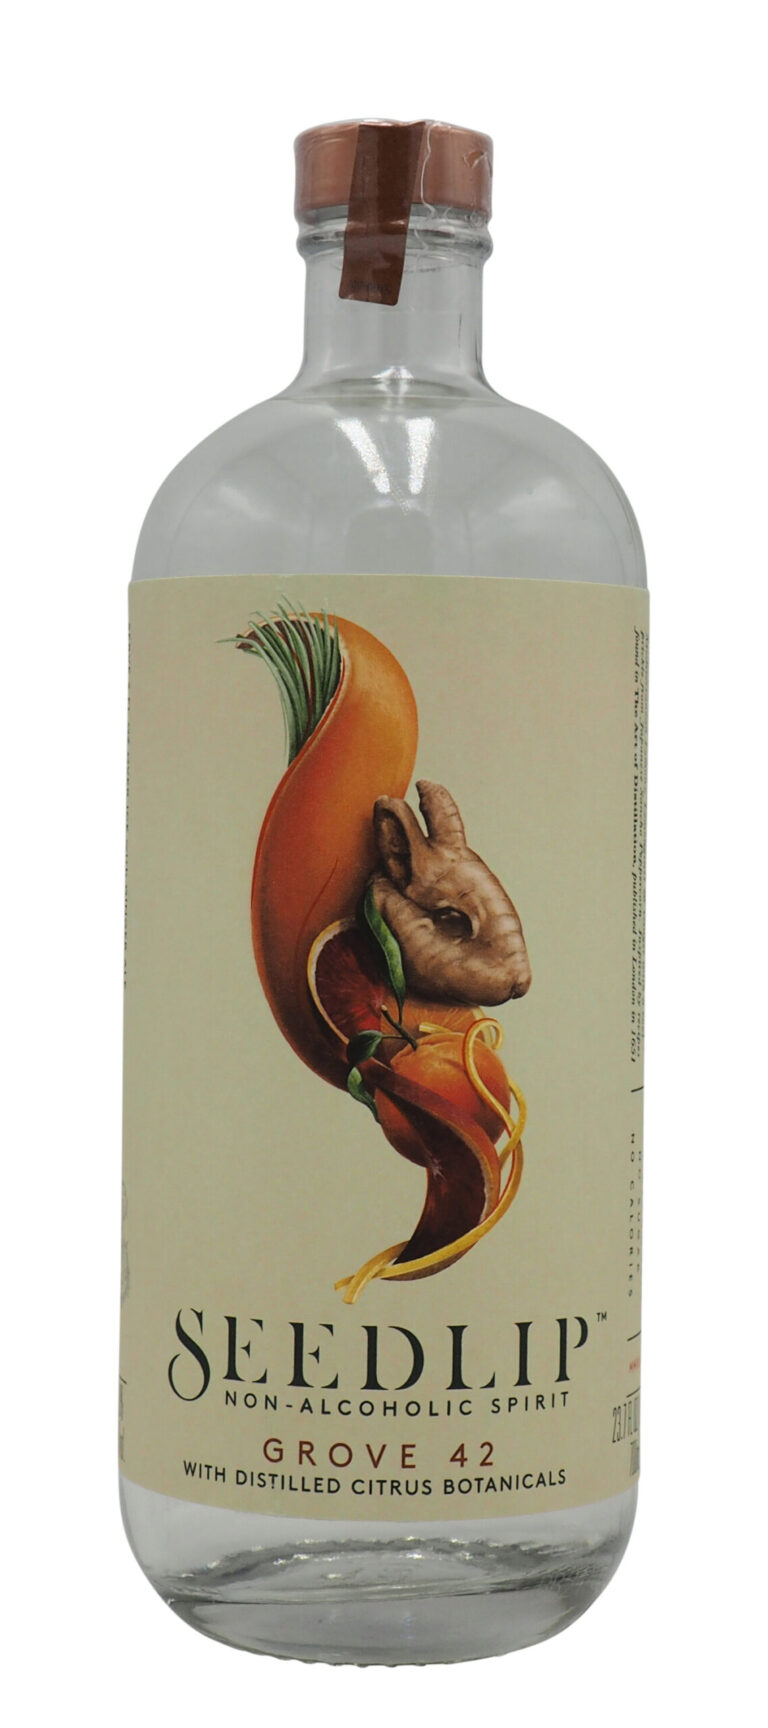 Seedlip ‘Grove 42 Citrus’ Non-Alcoholic Spirit